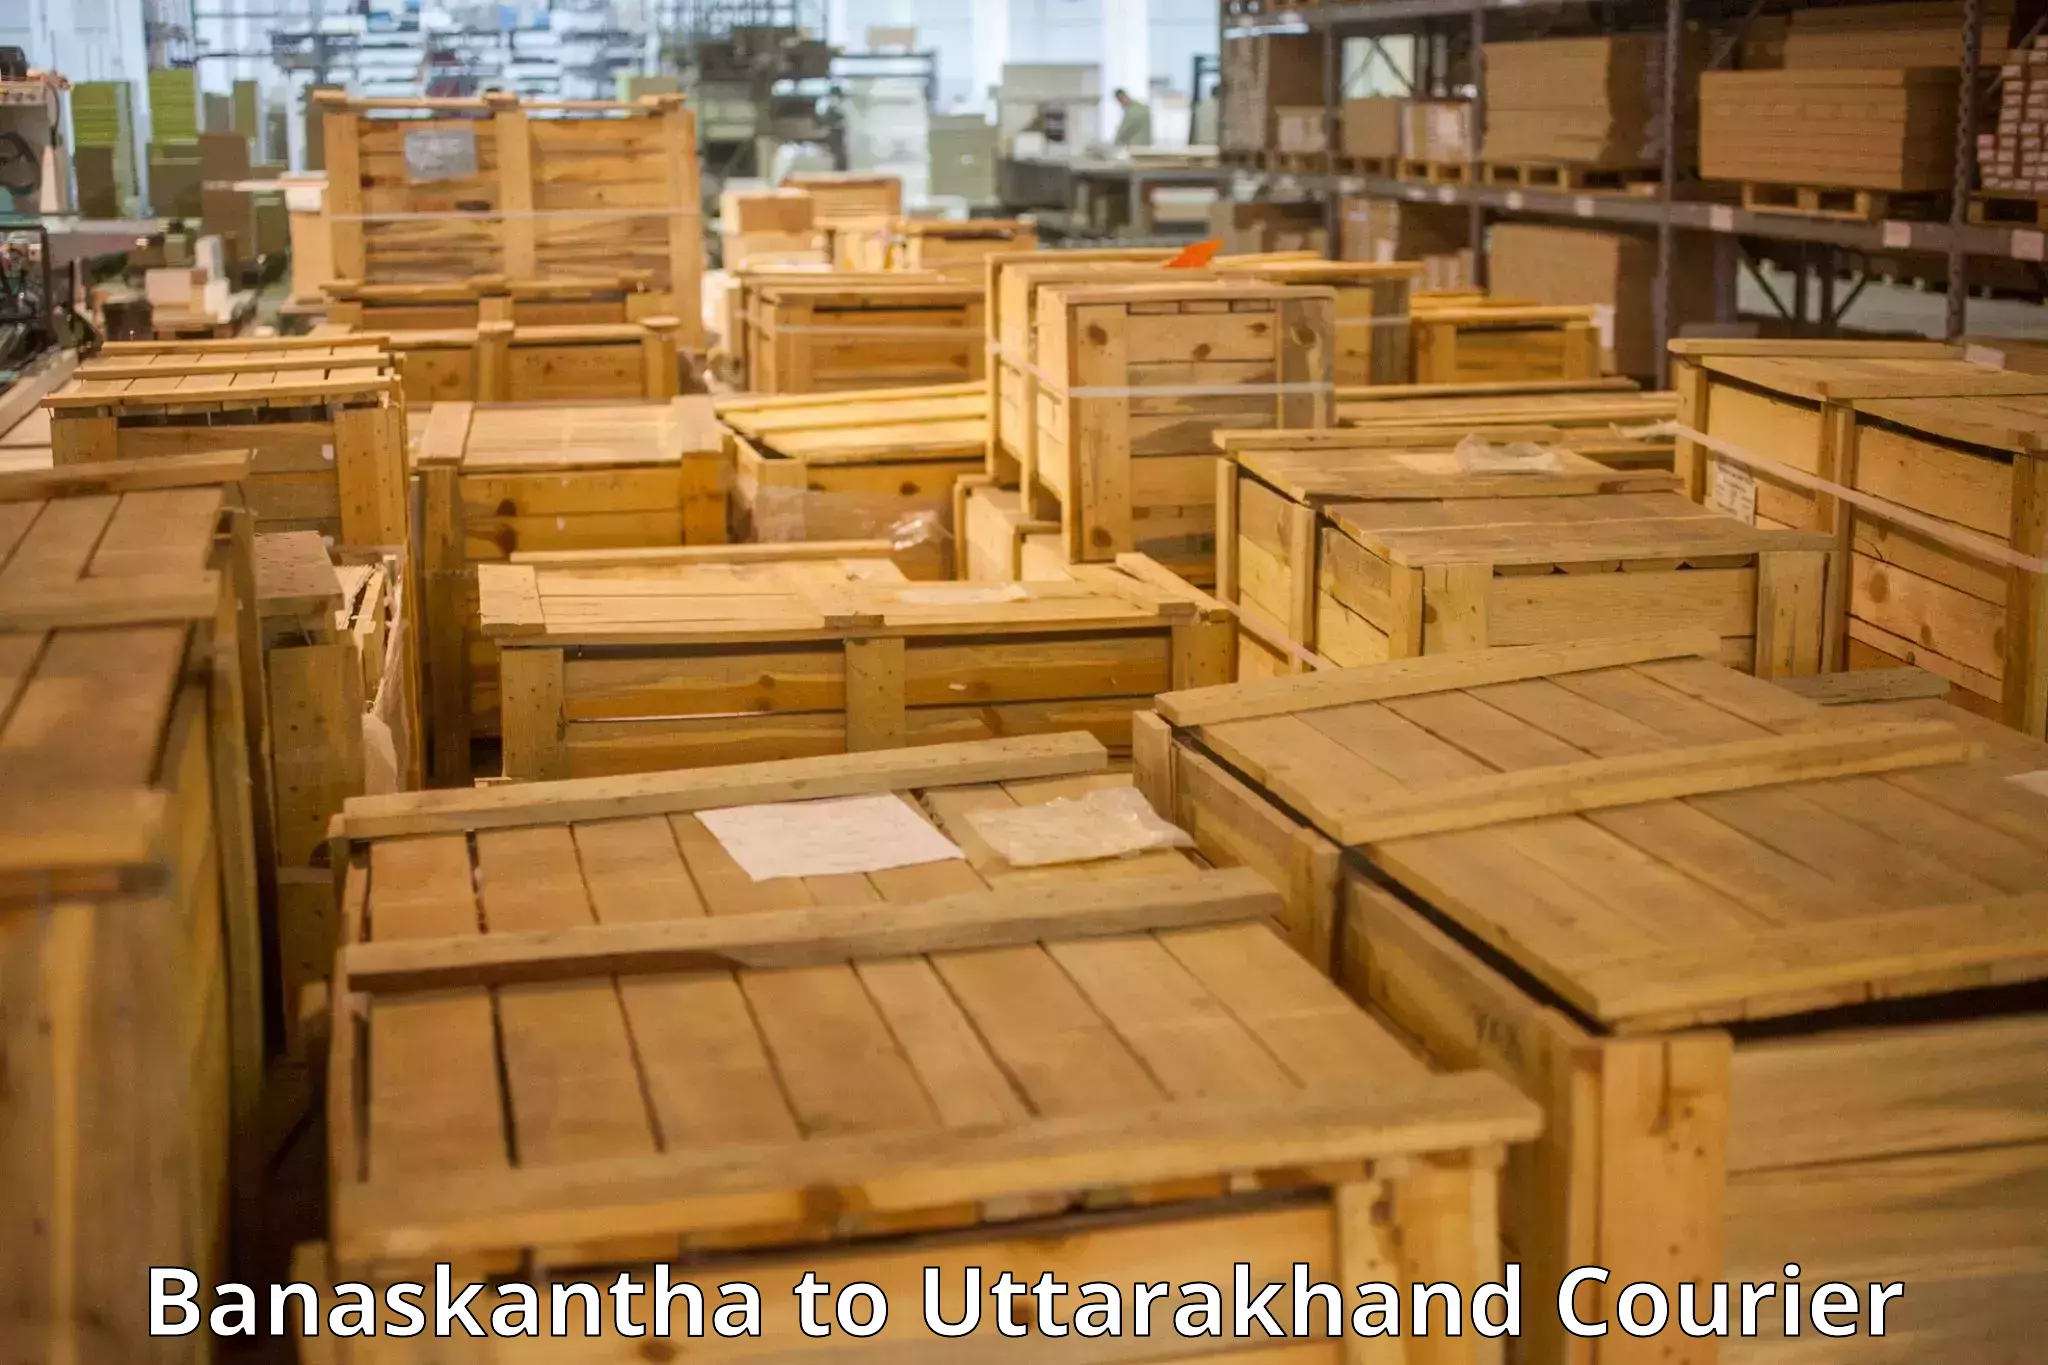 Baggage delivery estimate in Banaskantha to Uttarakhand